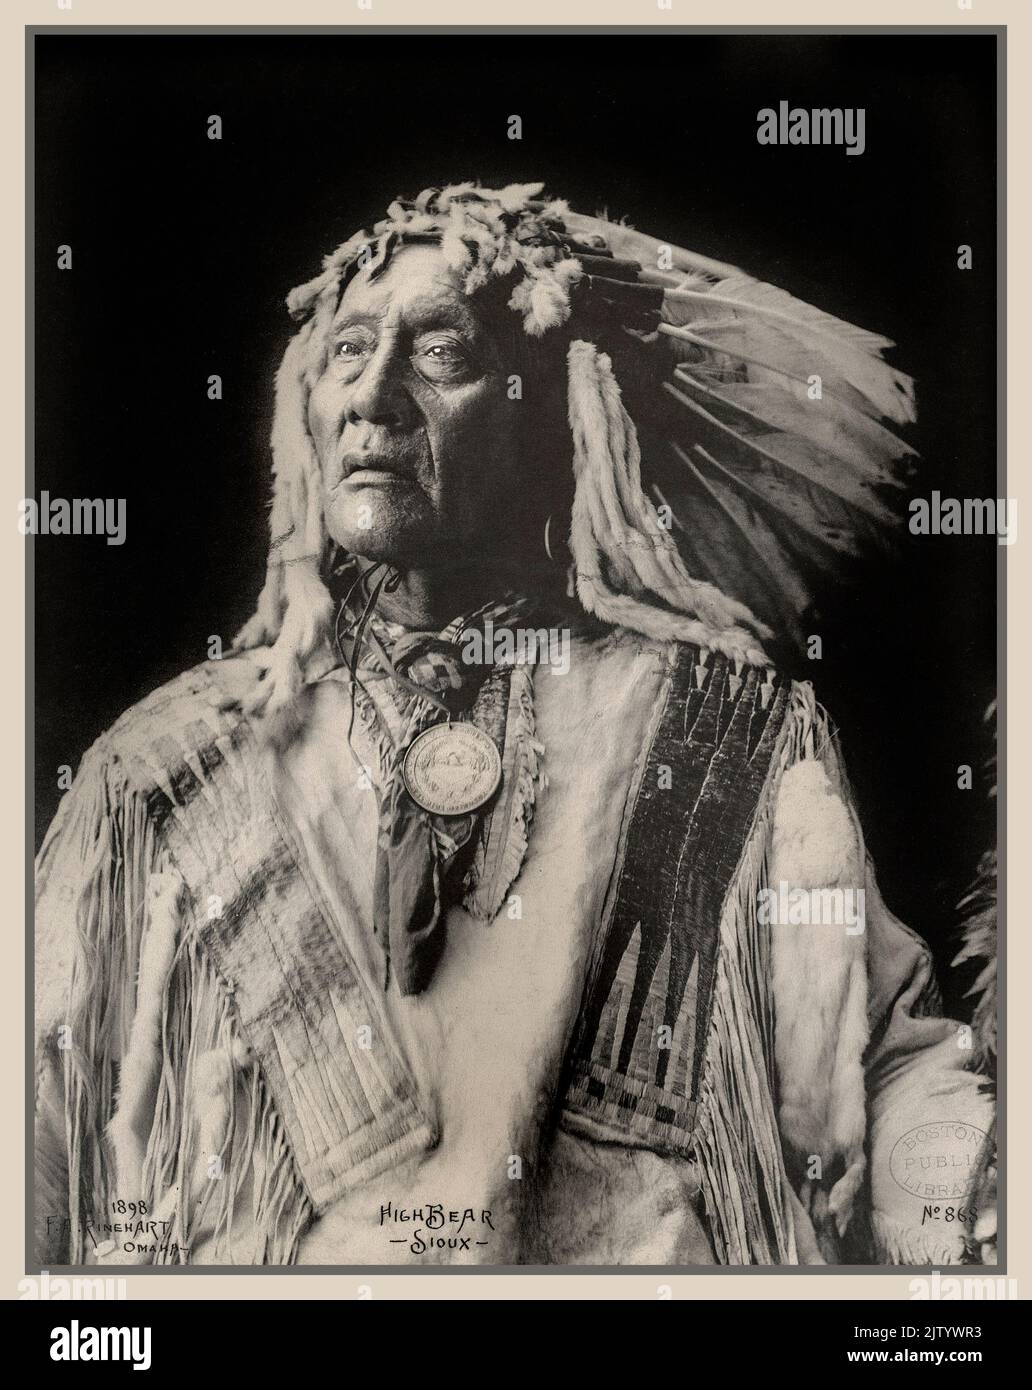 High Bear, Sioux North American nativo etnico indigeno sioux Tribe fotografo: Rinehart, F. A. (Frank A.) 1898 1 stampa fotografica : stampe platino; Fotografie di ritratti indiani del Nord America; Dakota Indiani; Trans-Mississippi ed esposizione internazionale (1898 : Omaha, Nebraska USA.) Foto Stock